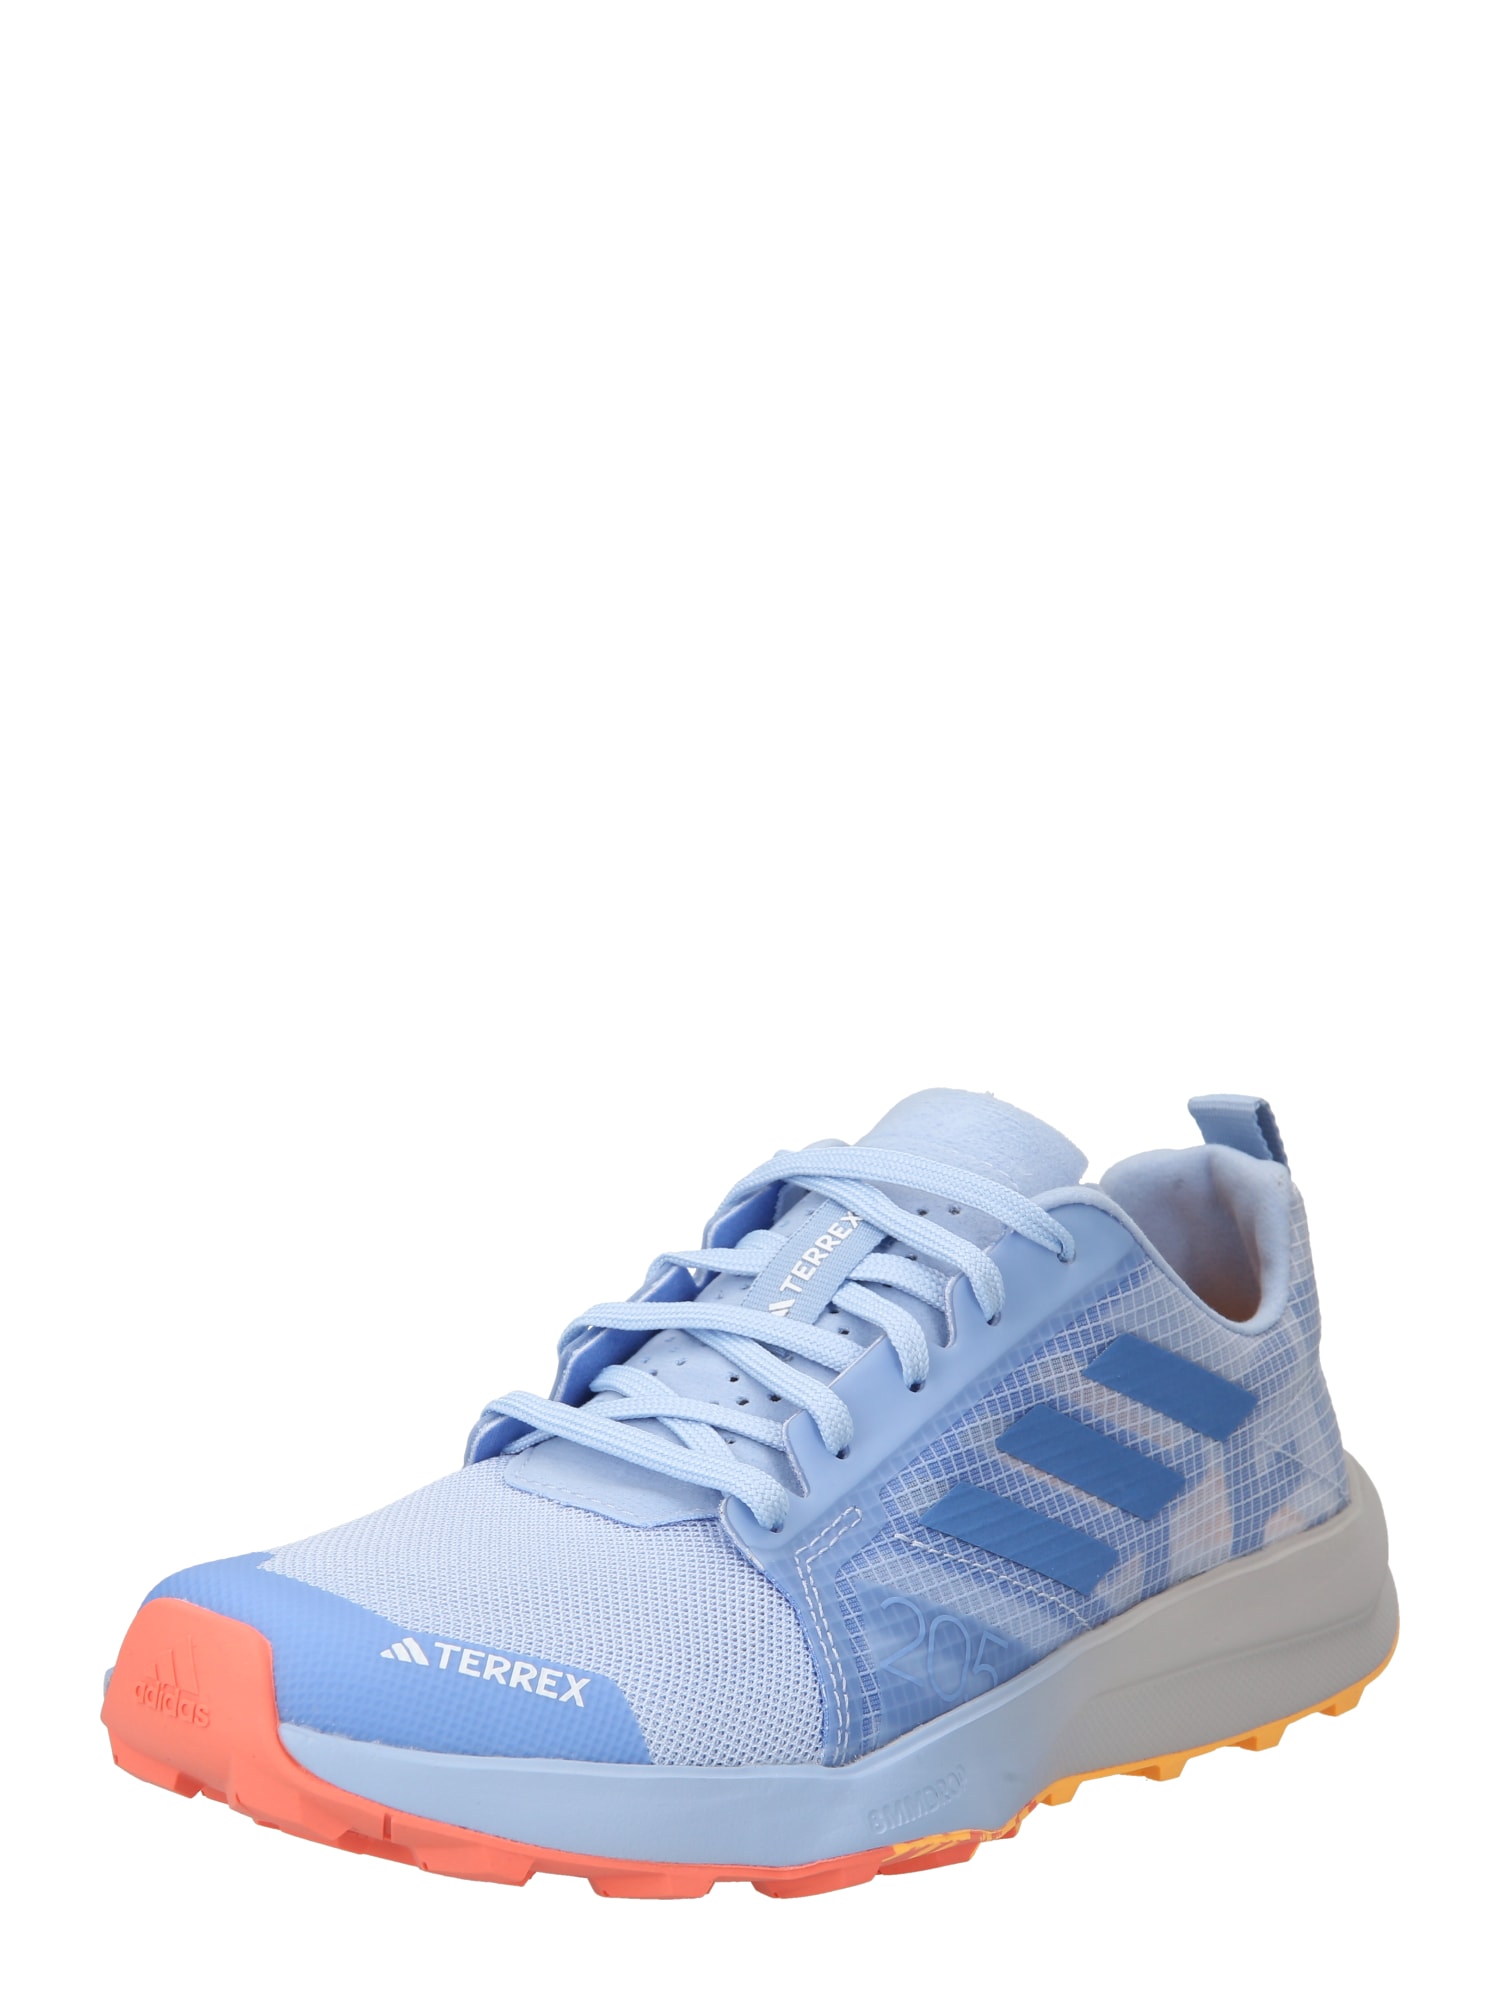 ADIDAS TERREX Bėgimo batai 'Speed Flow' mėlyna / šviesiai mėlyna / šviesiai oranžinė / balta